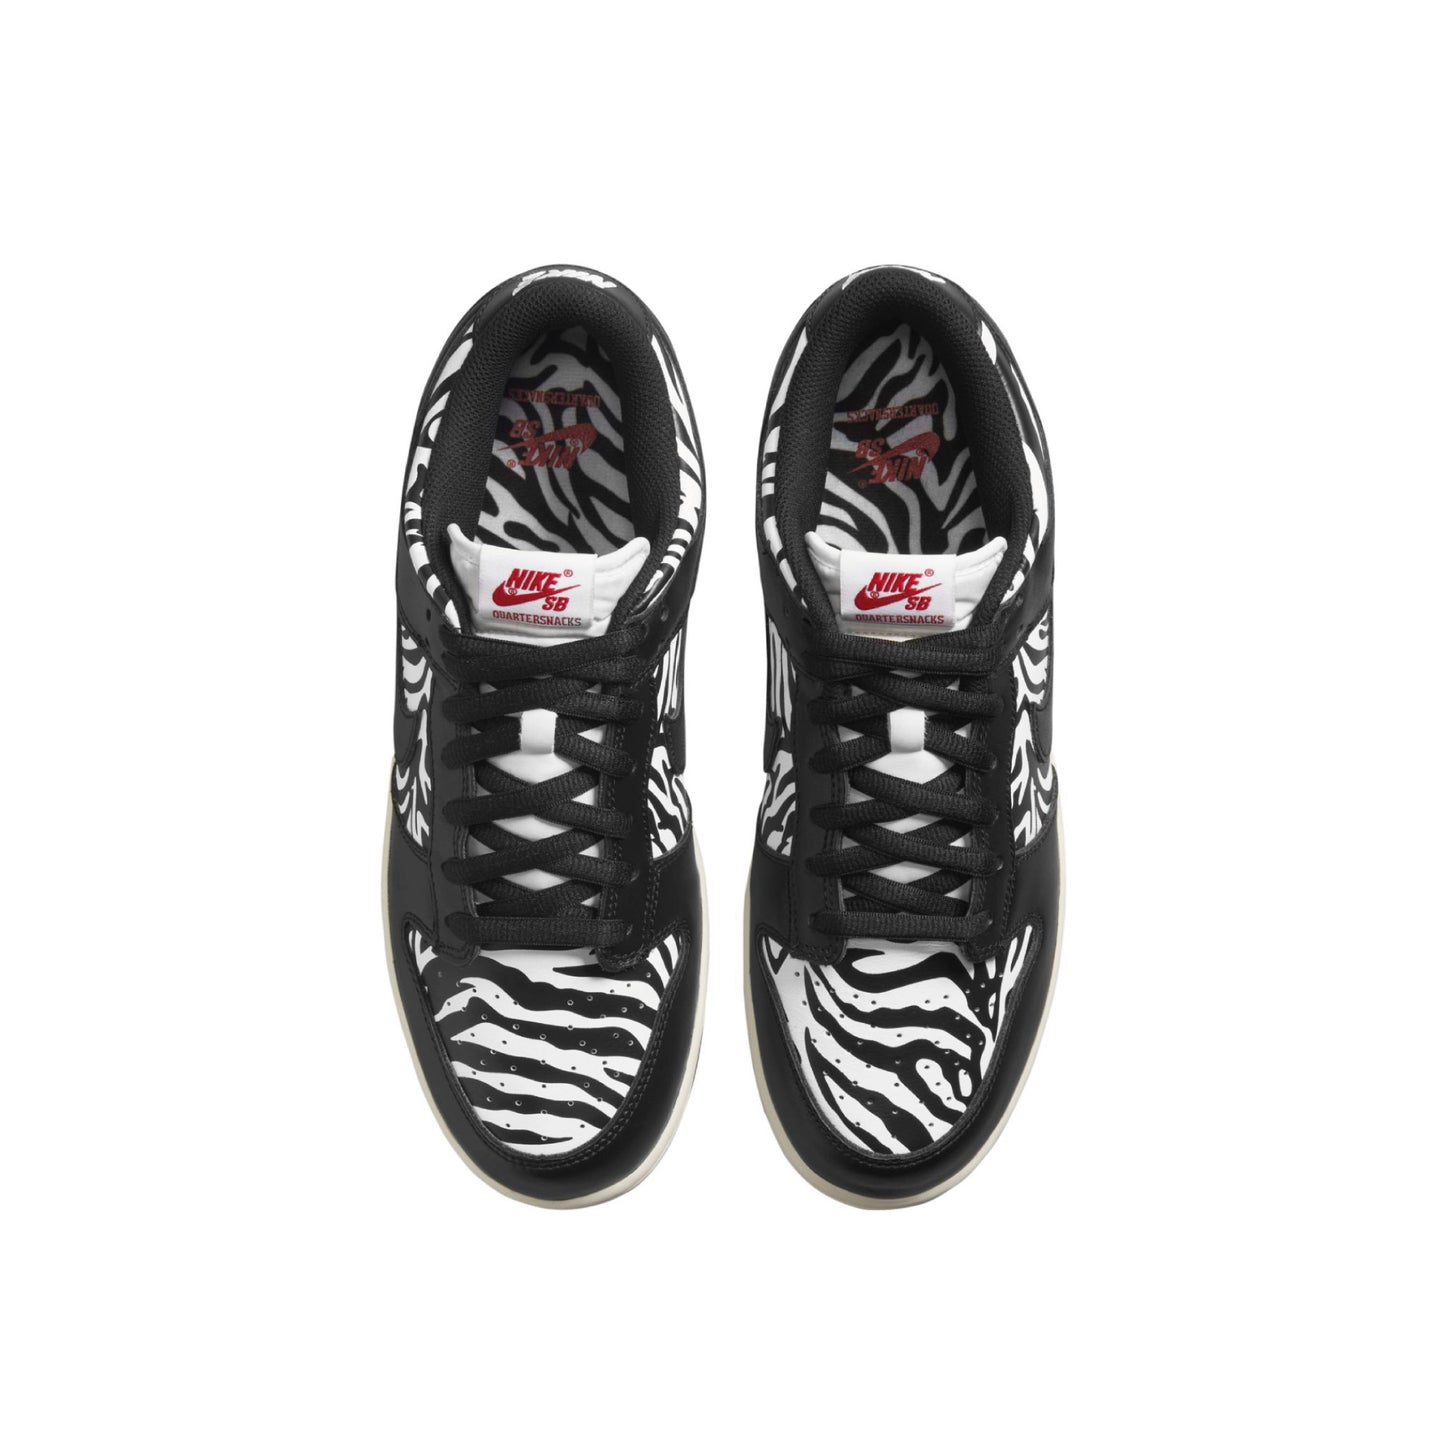 Nike SB x Quartersnacks Dunk Low Pro 'Zebra'